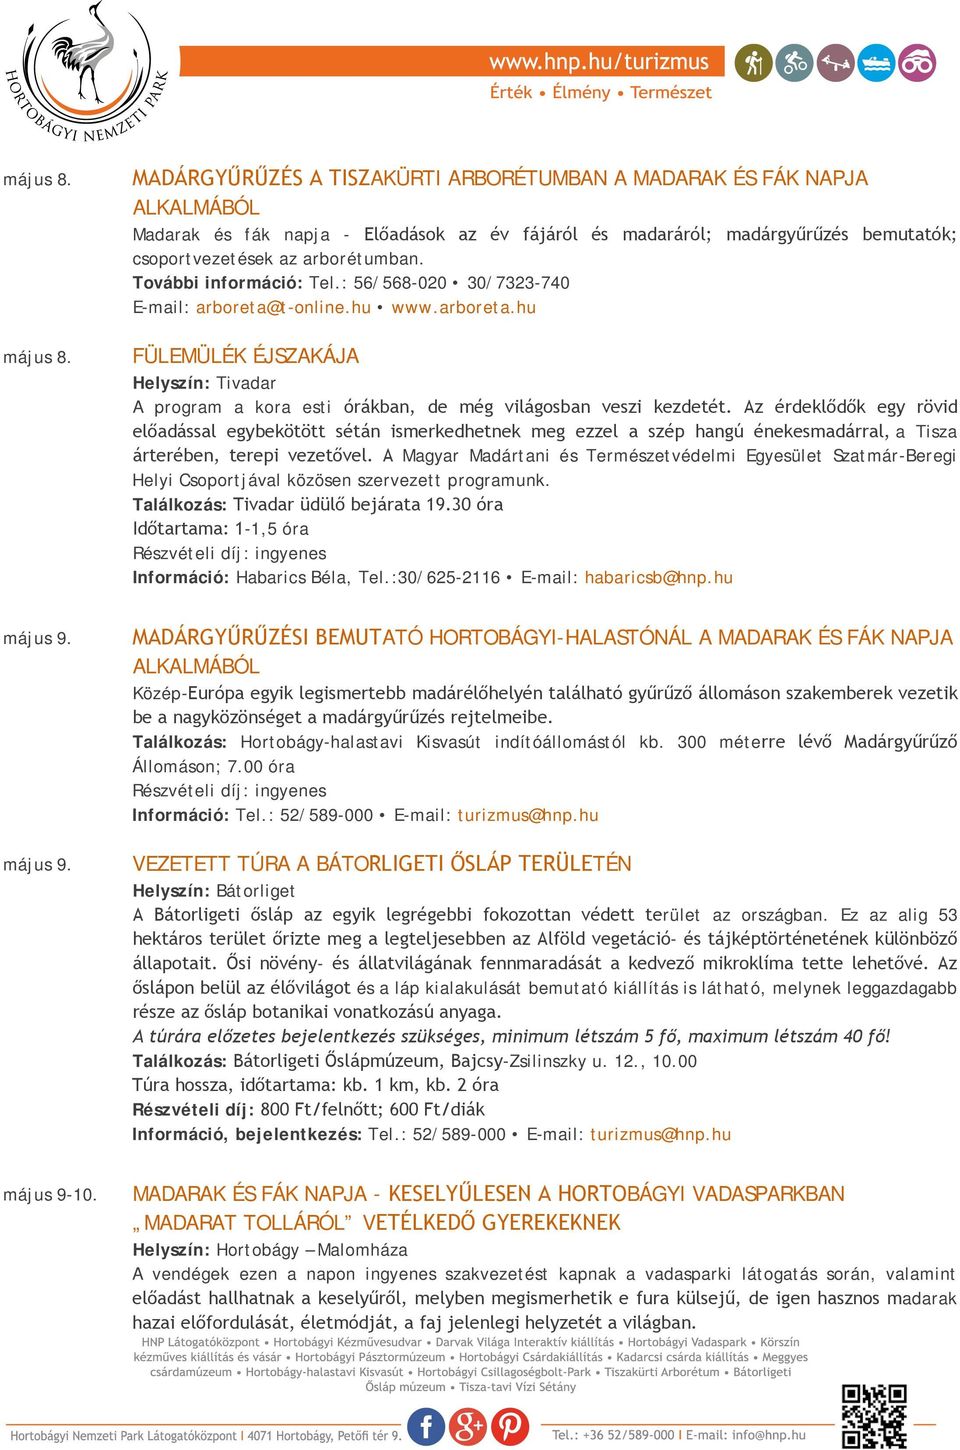 További információ: Tel.: 56/568-020 30/7323-740 E-mail: arboreta@t-online.hu www.arboreta.hu FÜLEMÜLÉK ÉJSZAKÁJA Helyszín: Tivadar A program a kora esti órákban, de még világosban veszi kezdetét.